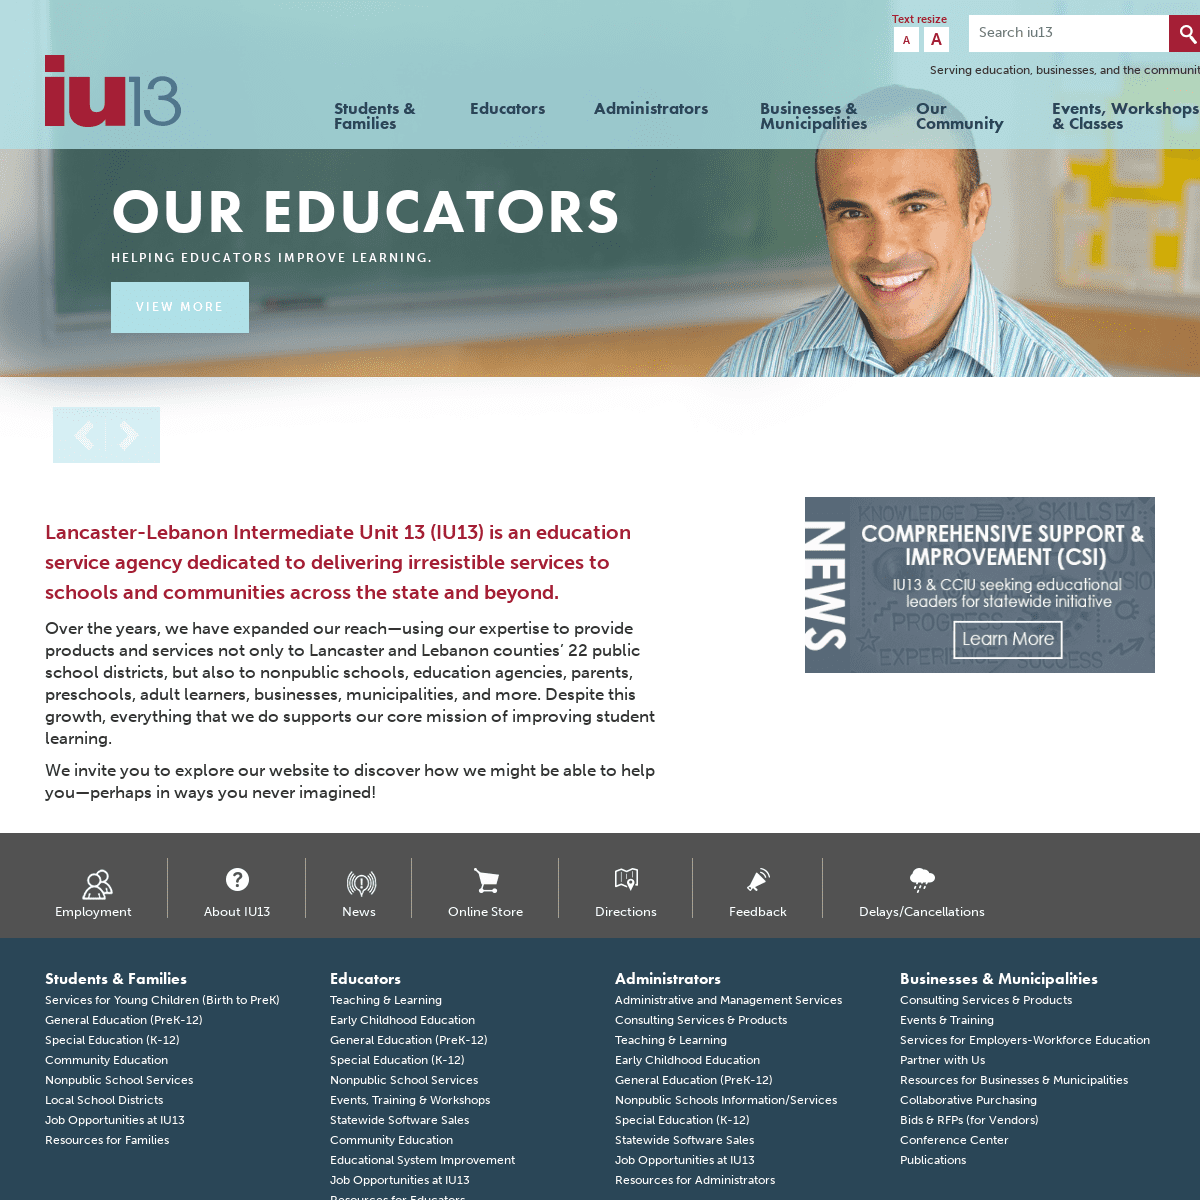 Welcome to IU13 | IU13